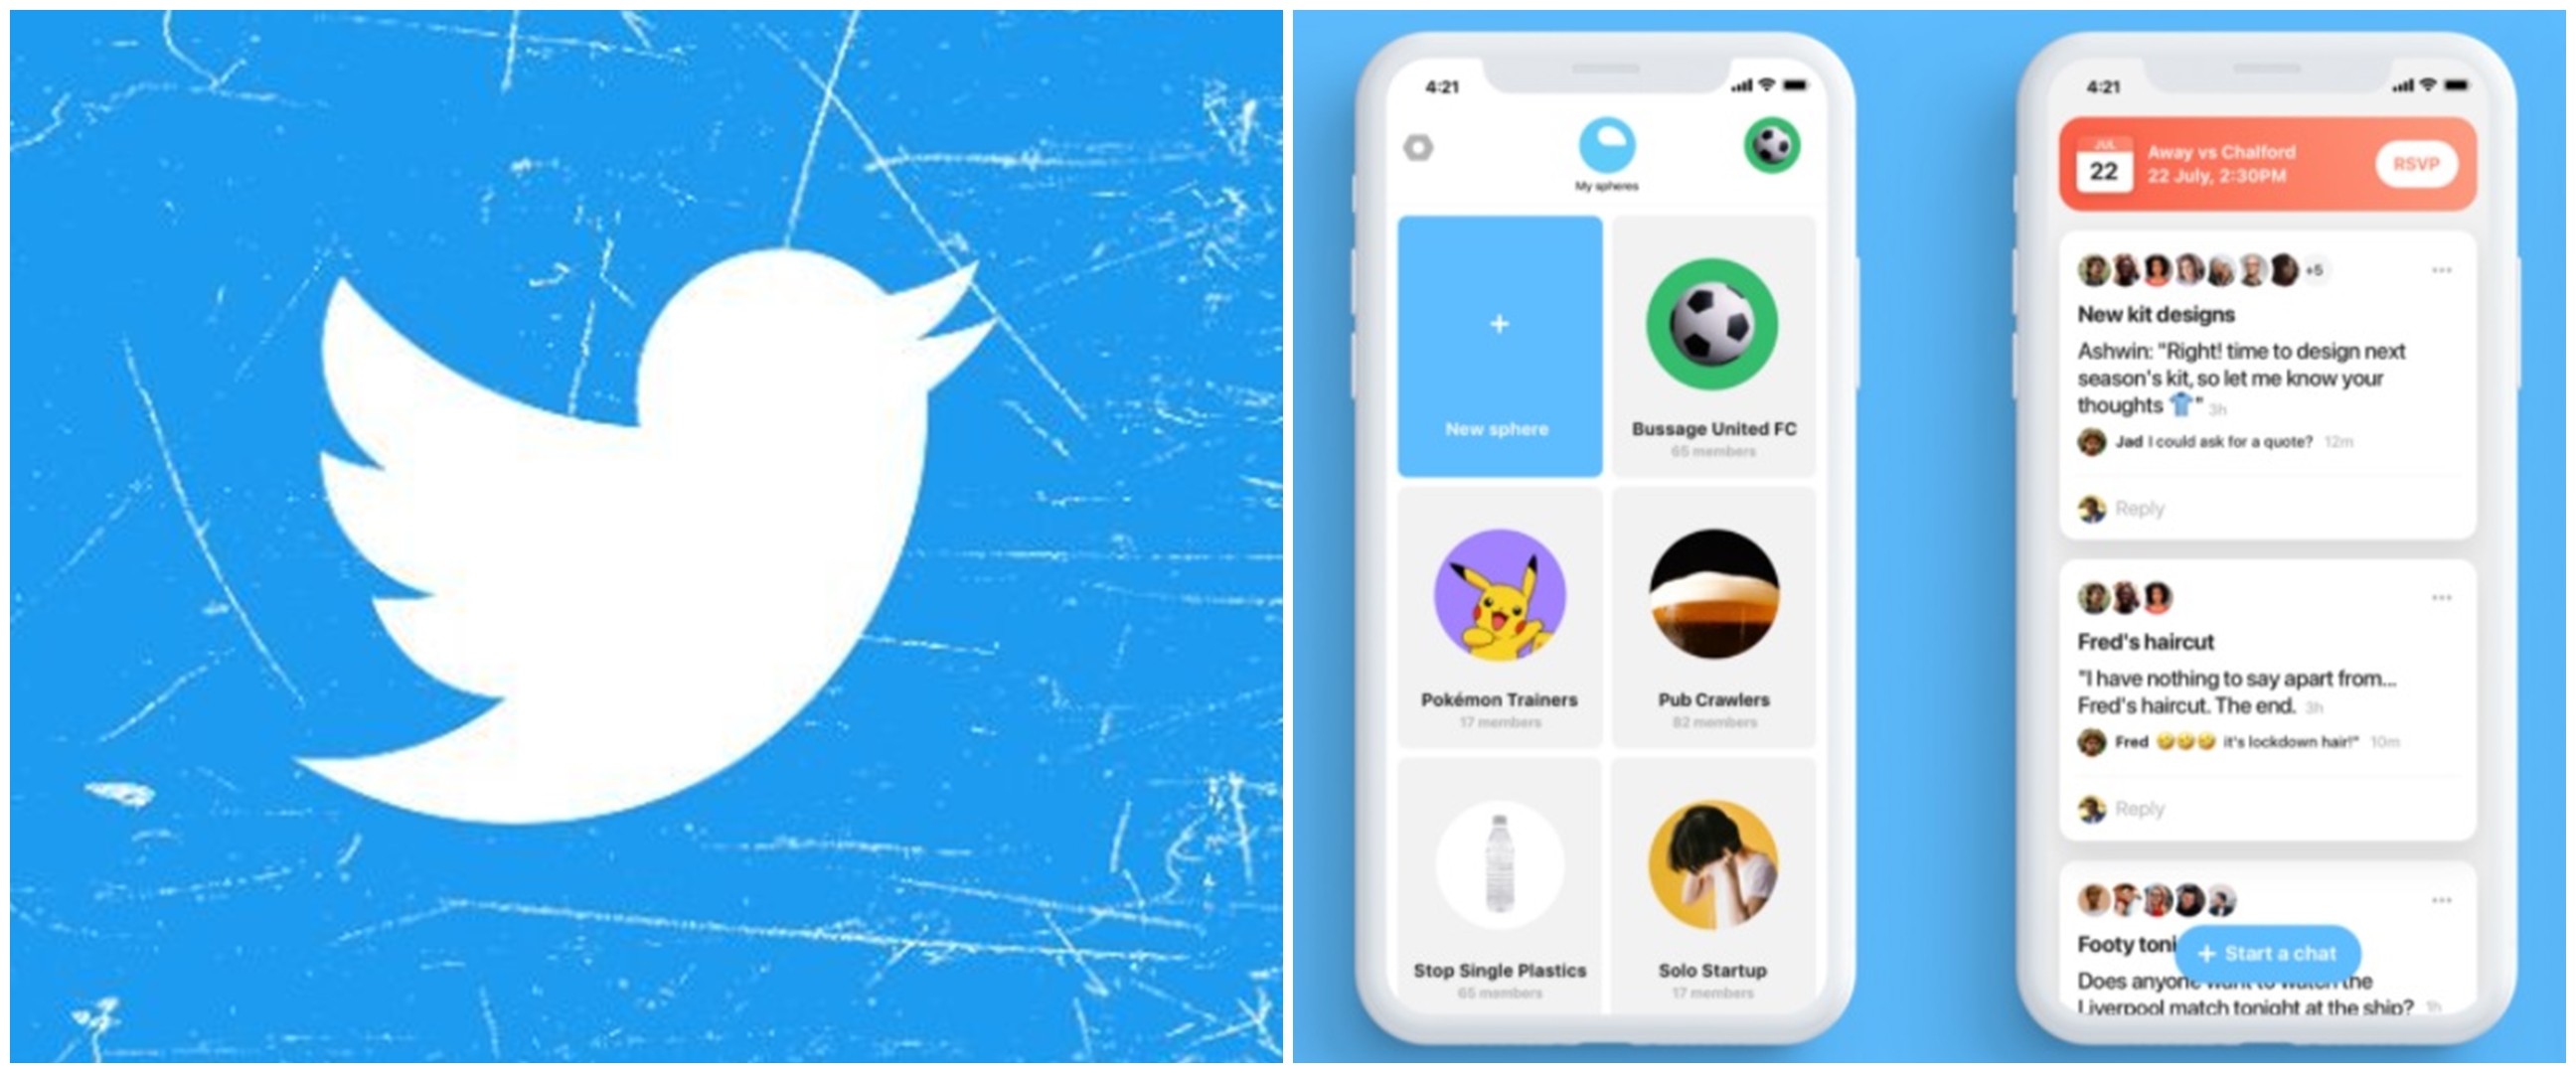 9 Fakta Sphere, aplikasi yang dibeli Twitter biar chatting lebih seru